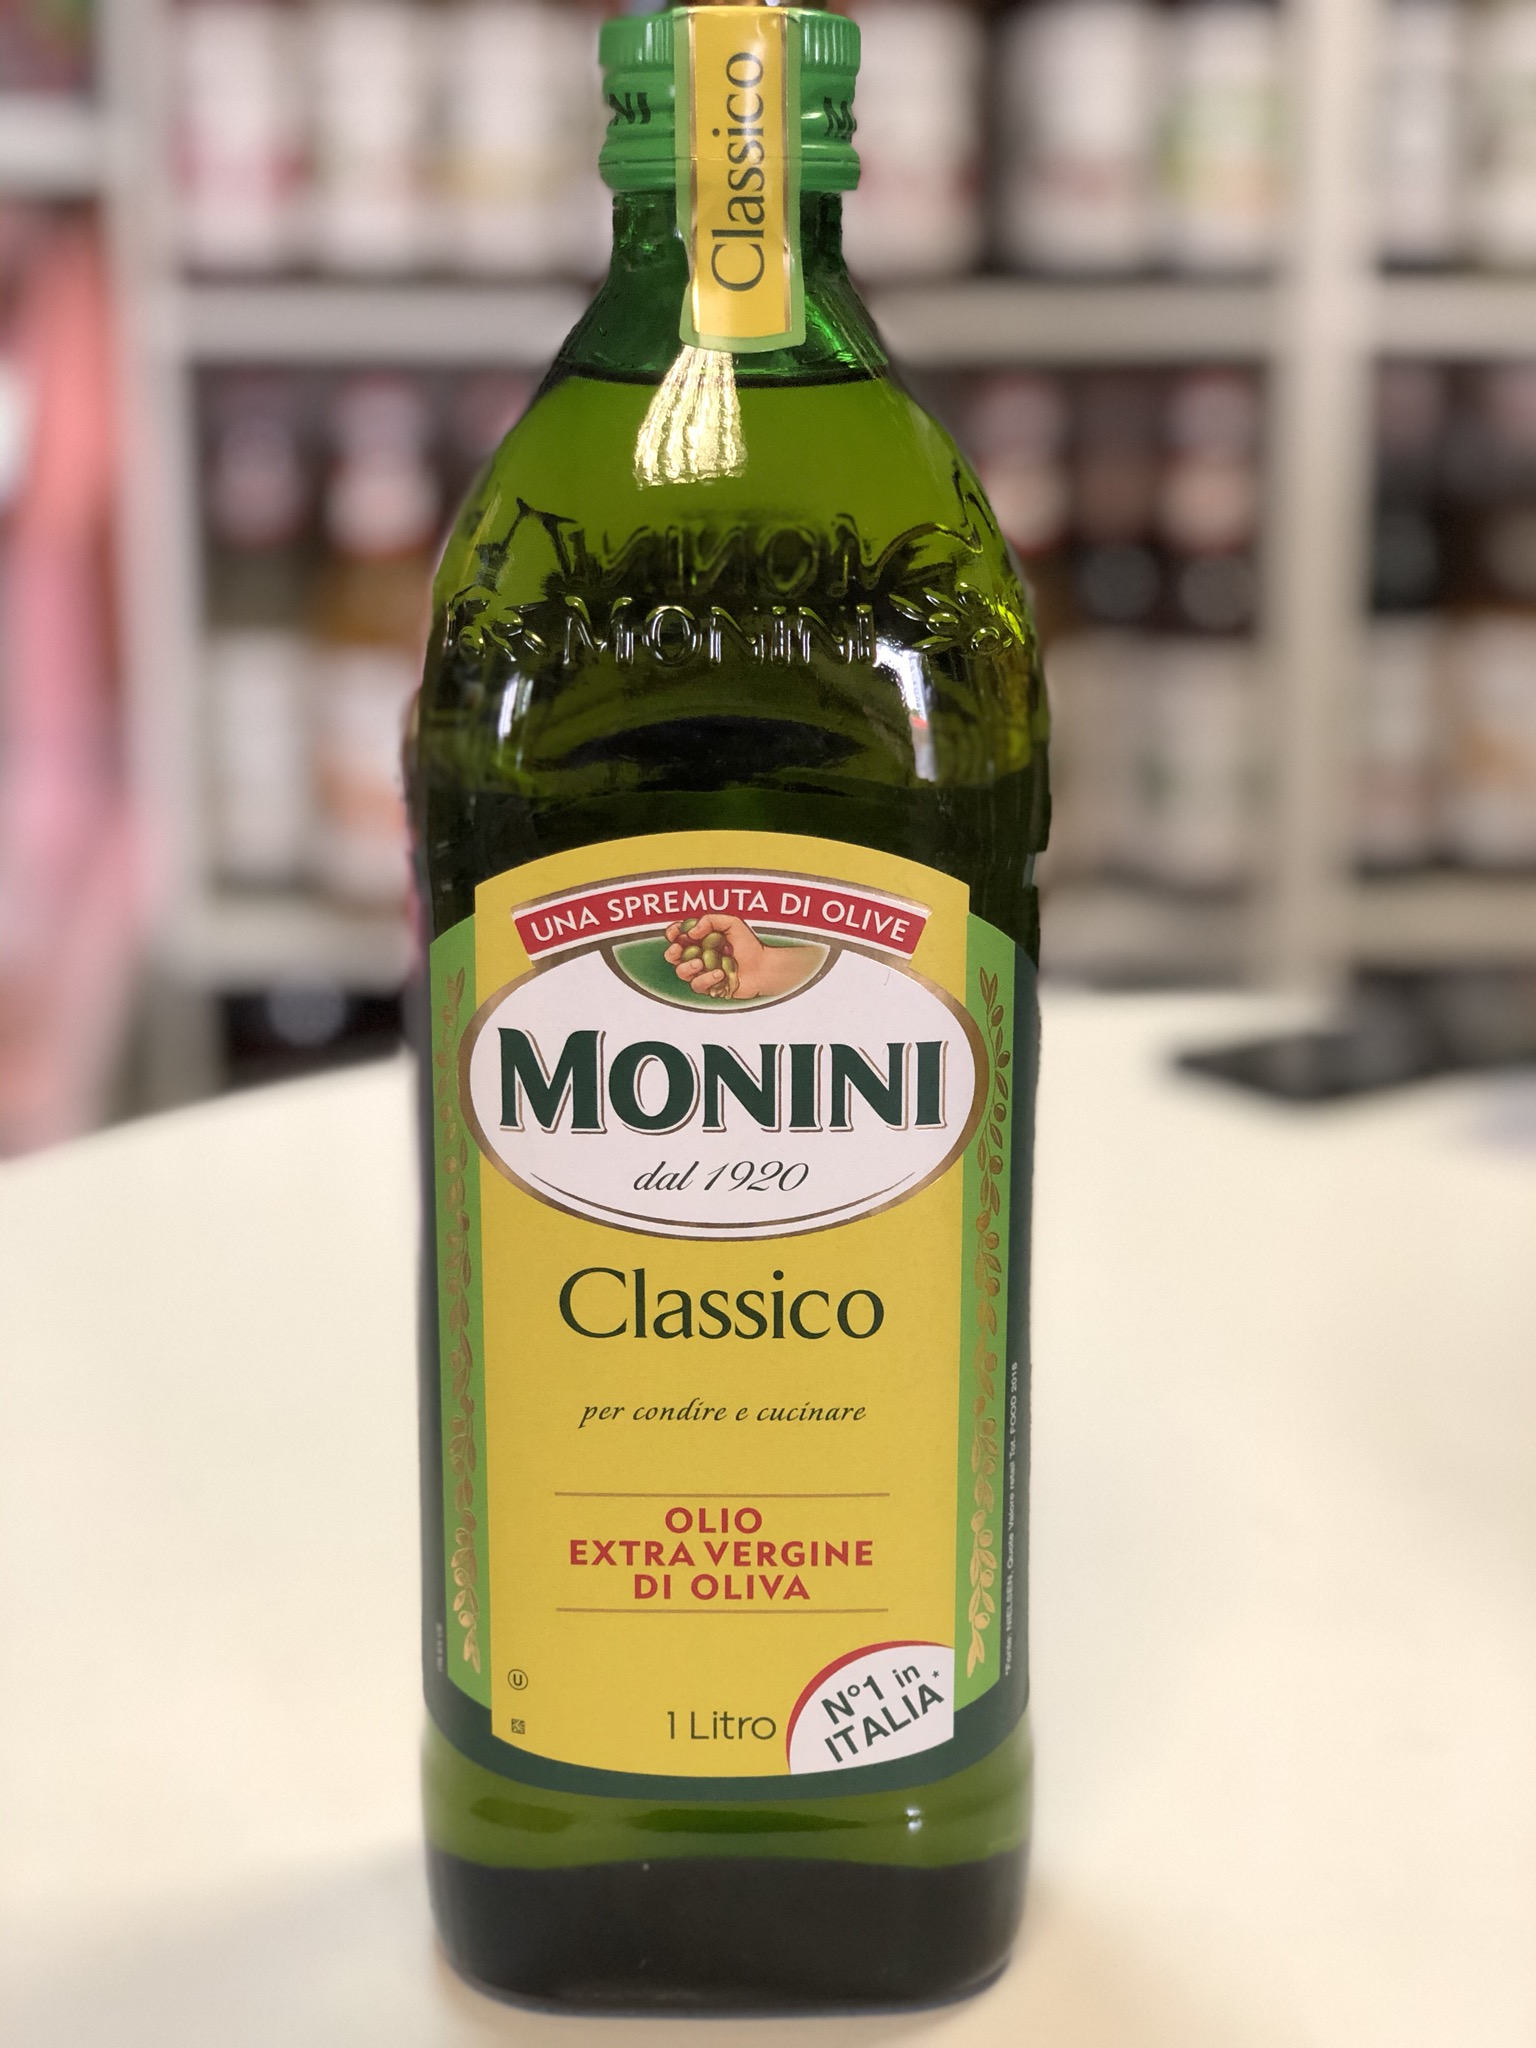 Масло оливковое monini classico. Масло оливковое Monini Extra vergine Classico, 1л. Monini Classico оливковое масло 1 литр. Масло оливковое Монини 1 литр. Monini масло оливковое нерафинированное.